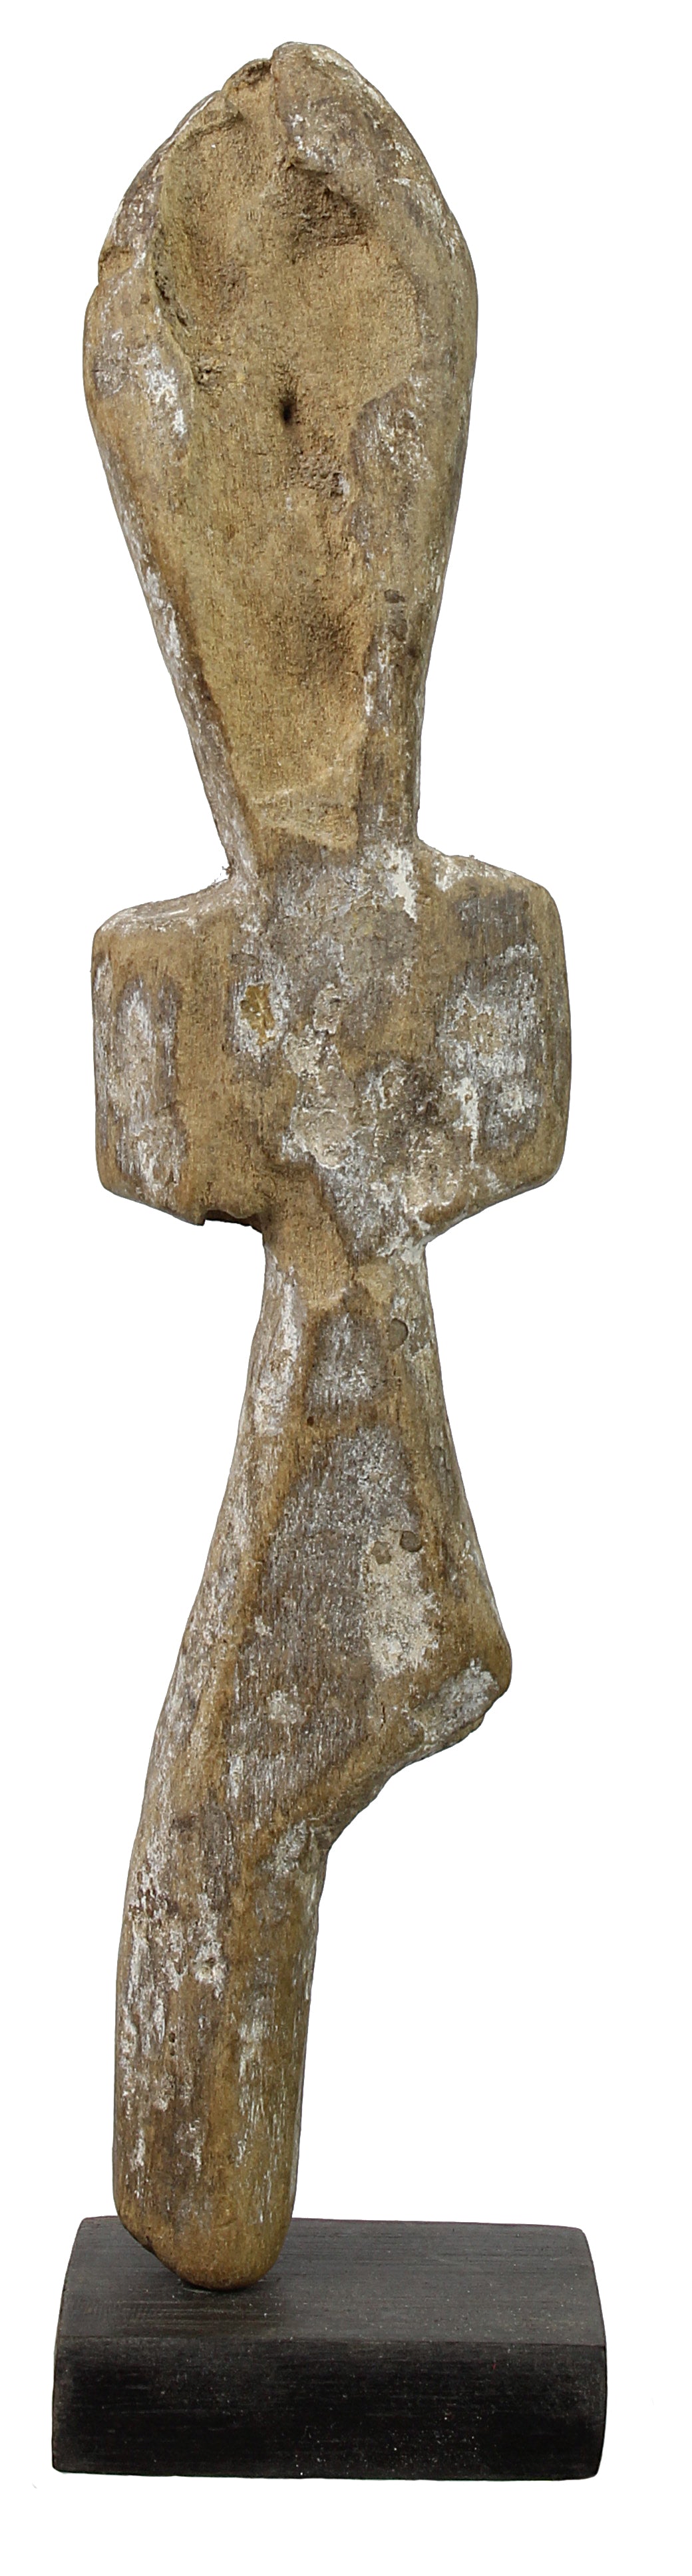 Vintage Ewe Ancestor Figure - Niger Bend